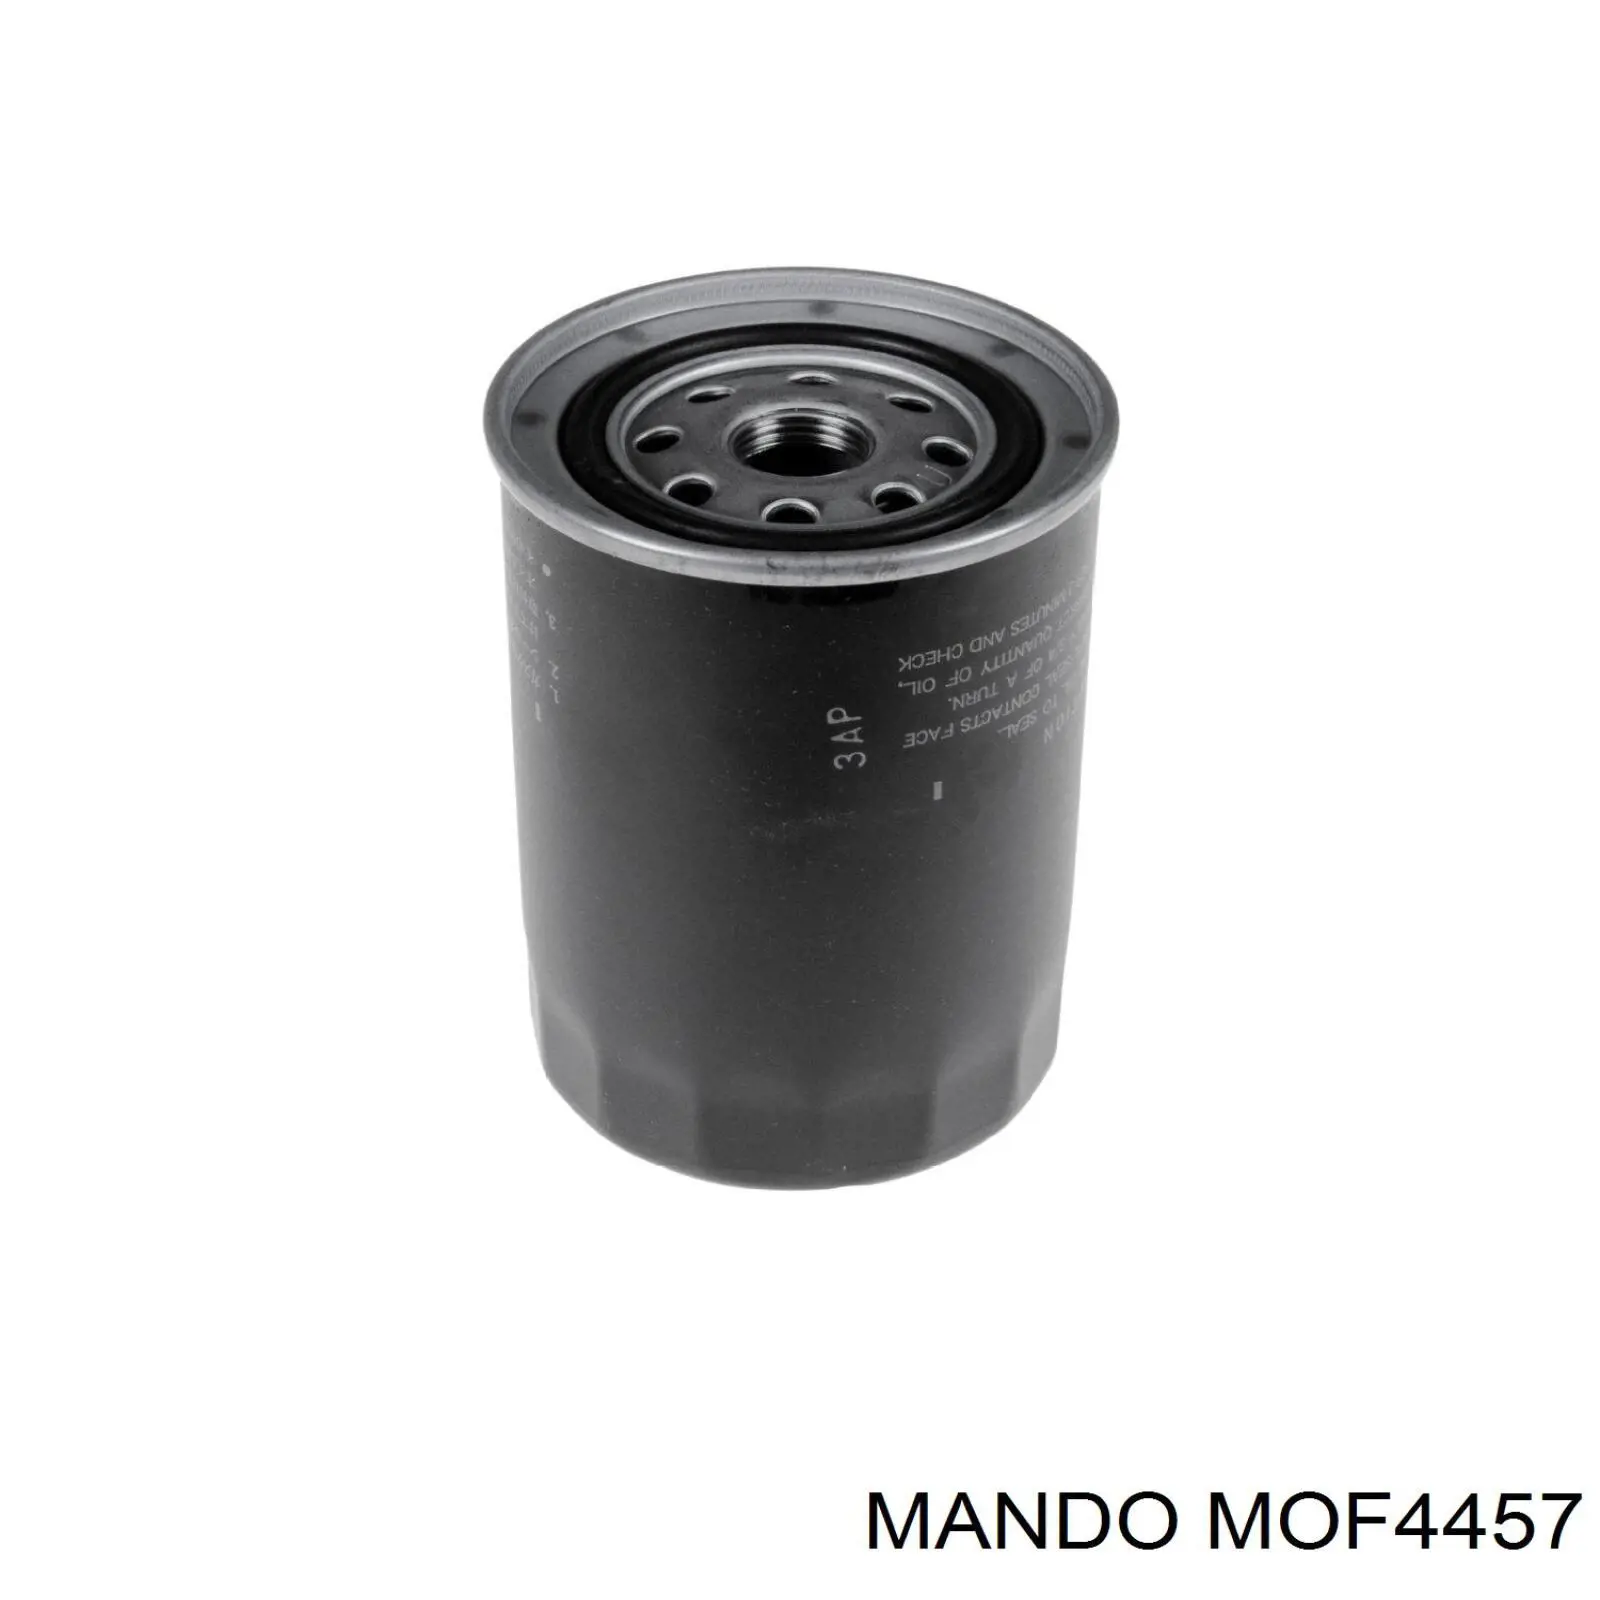 MOF4457 Mando масляный фильтр